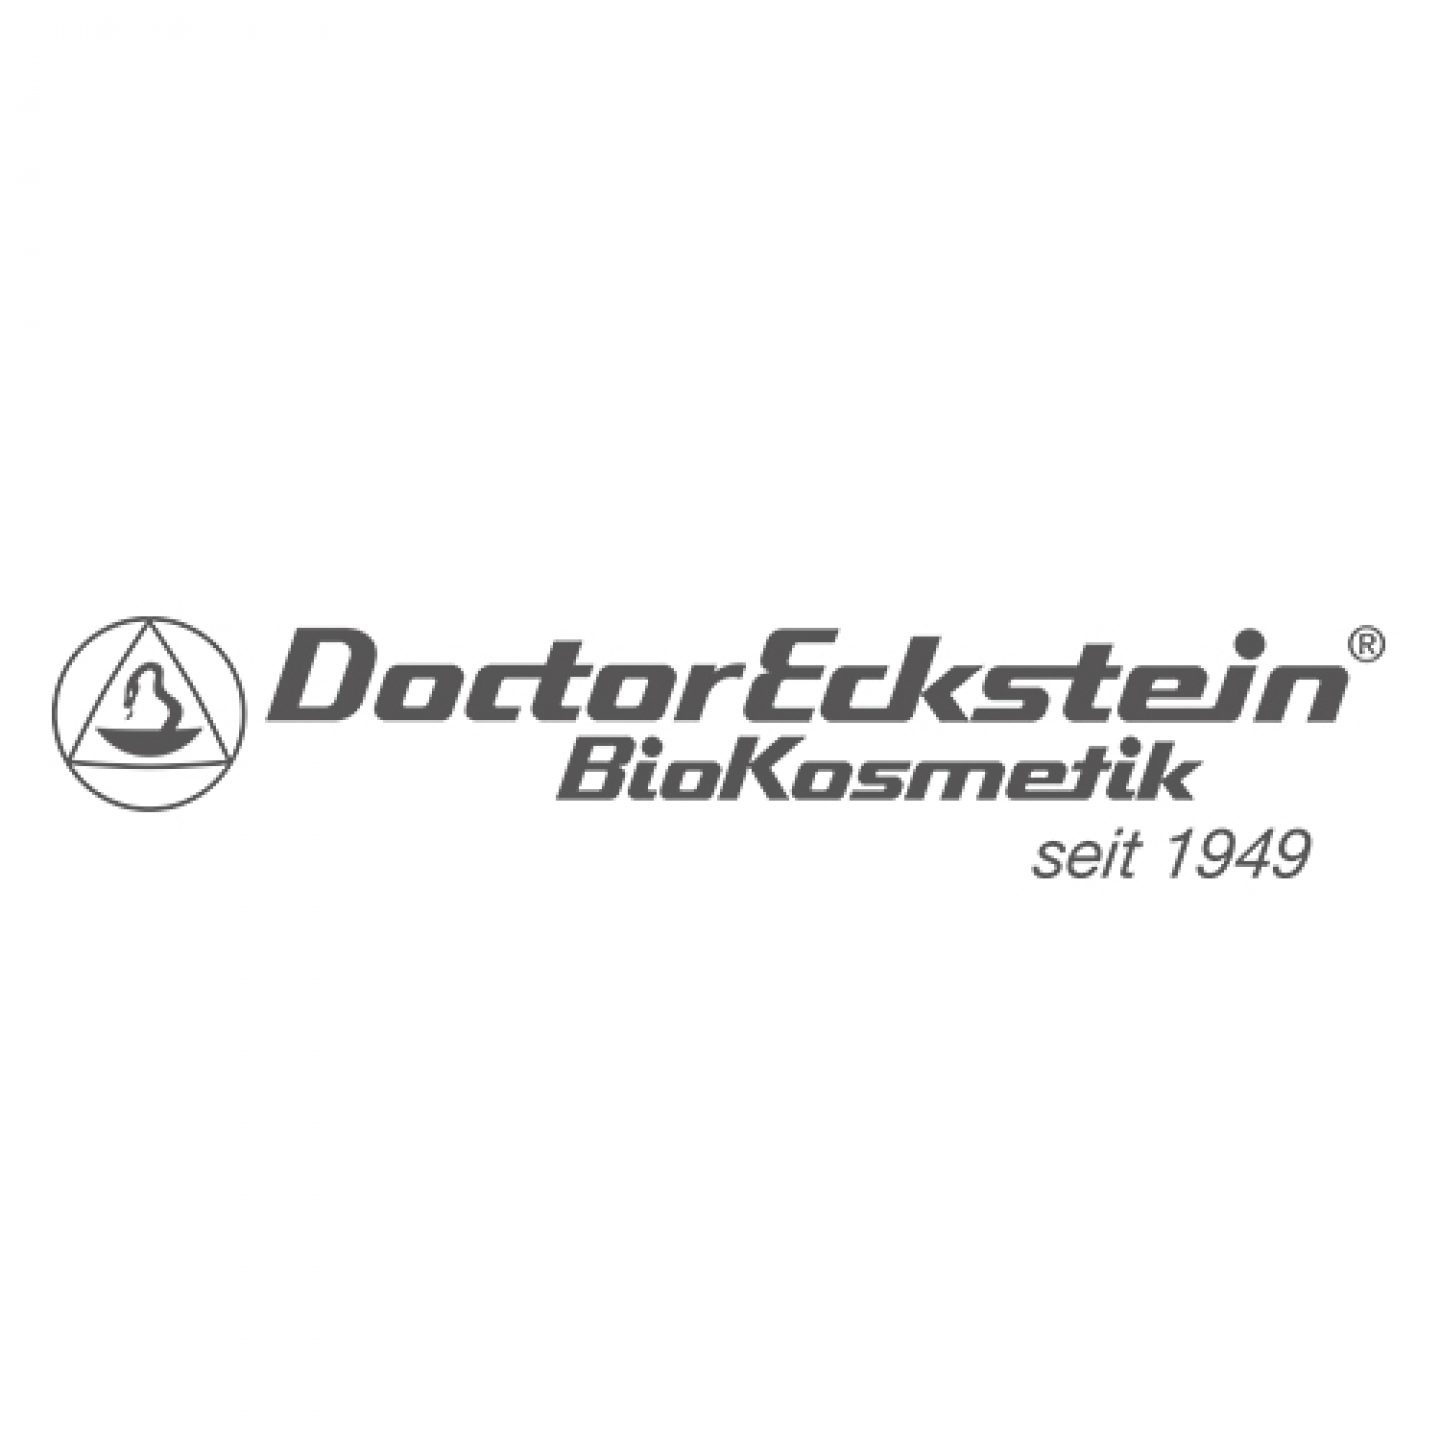 EEZ-Apotheke Marken Logo Dr. Eckstein